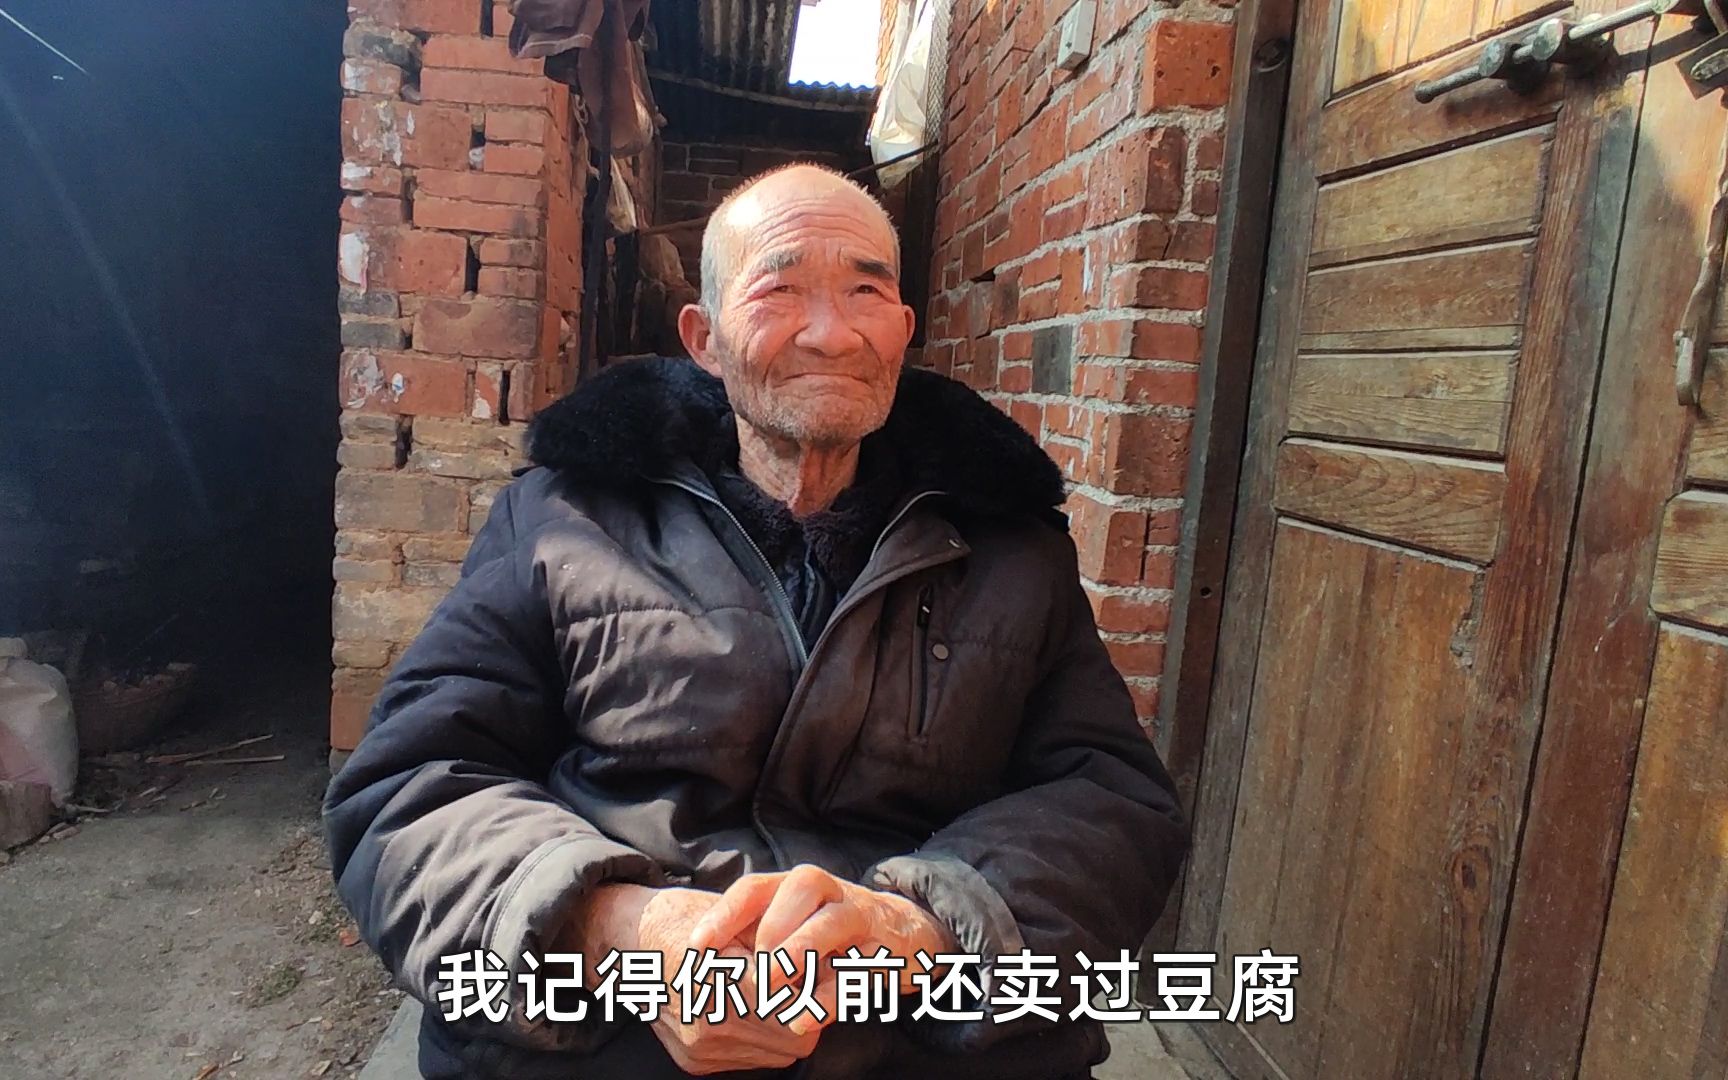 长了毛的豆腐却是宏村的美食 上过舌尖上的中国 北方人说真不敢吃-搜狐大视野-搜狐新闻